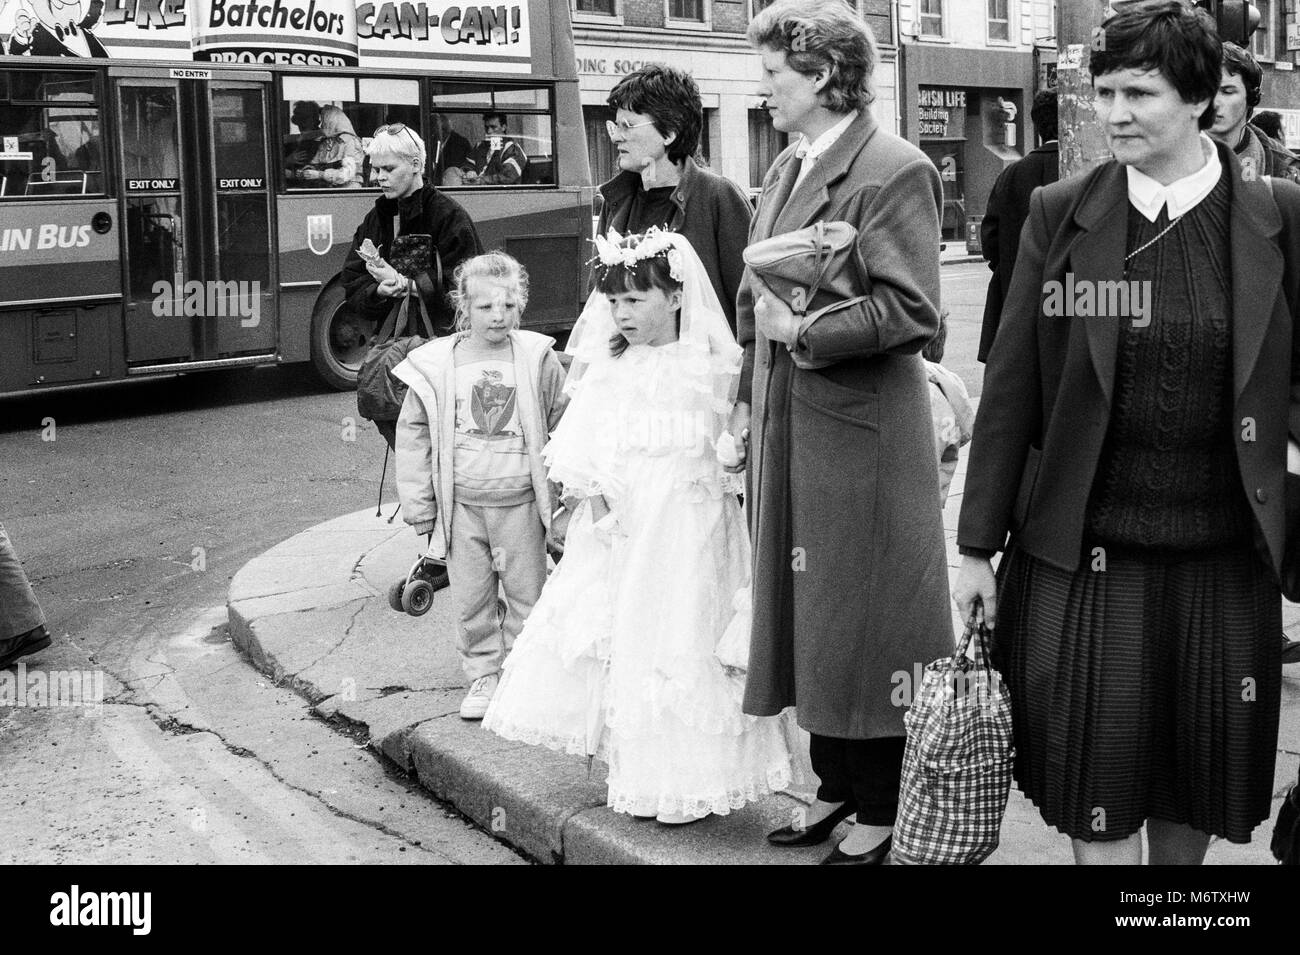 Junge Mädchen in der ersten Kommunion Kleid auf Straße Ecke warten, die Straße zu überqueren, Westmoreland Street, Dublin, Irland, Archivierung Foto von April 1988 Stockfoto